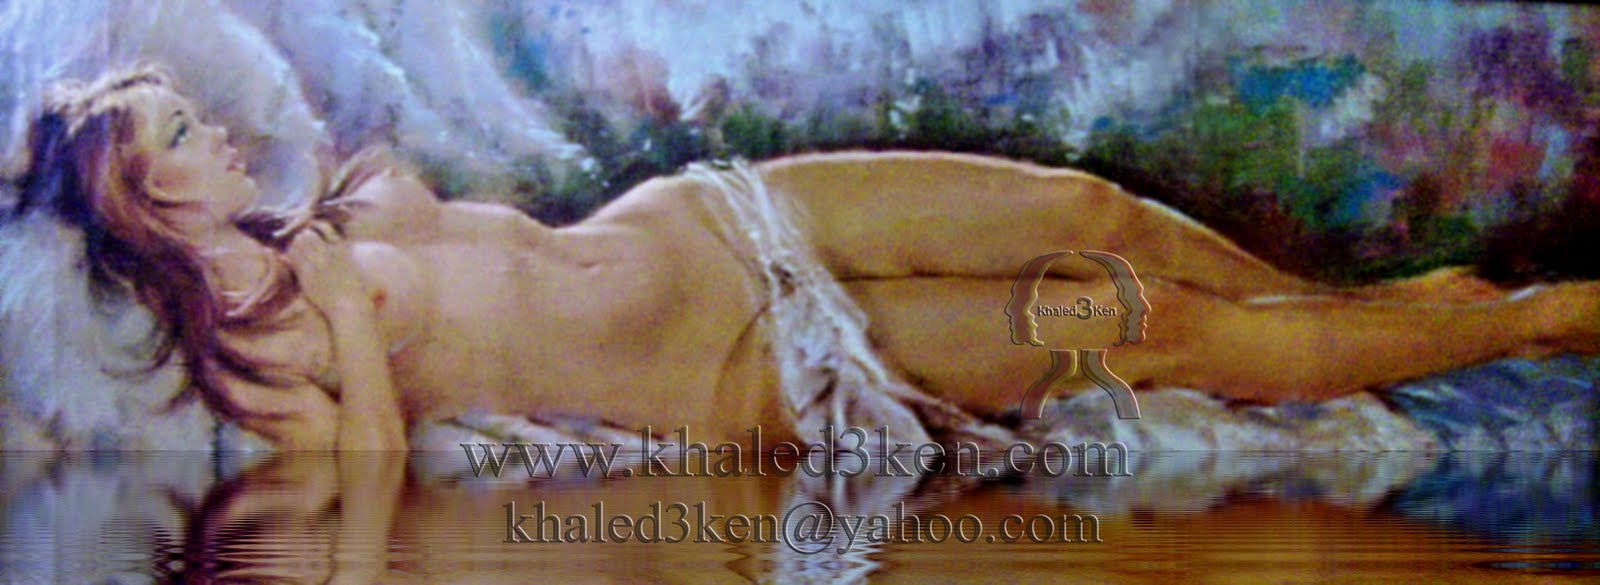 المرأة في لوحات عباقرة الرسم في العالم : الجزء الأول  KHALED3KEN+-+YOUTUBE+(41)+copy